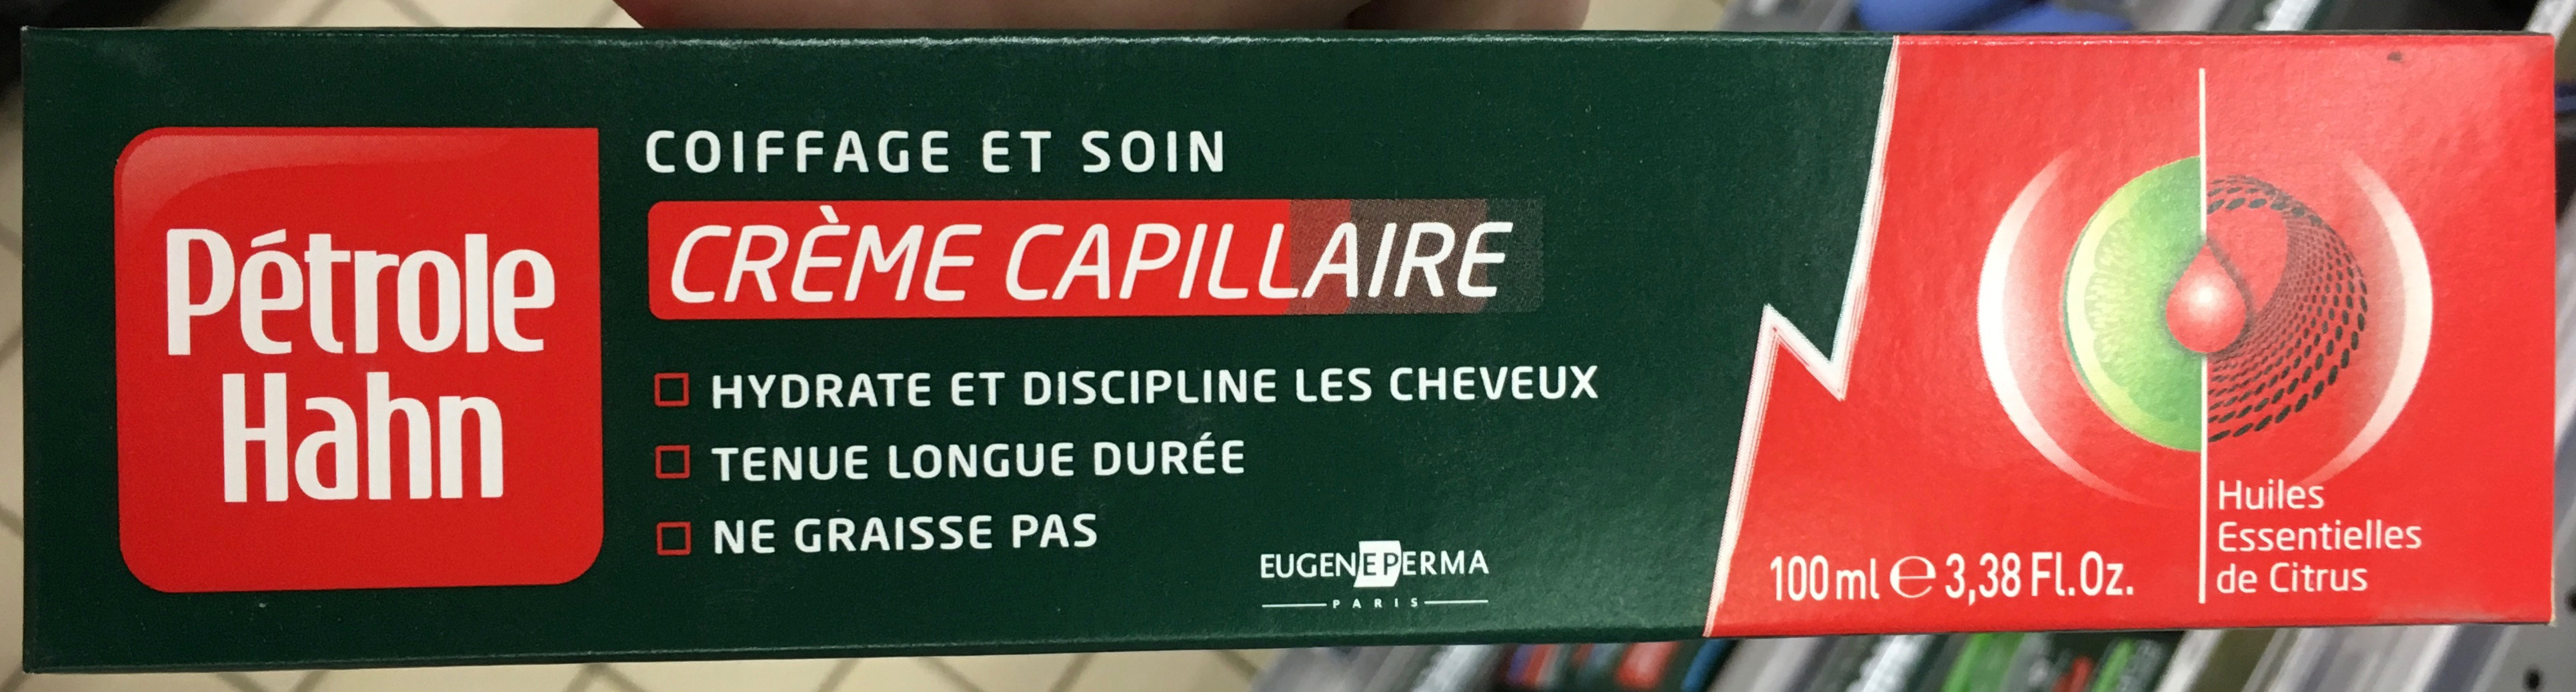 Crème capillaire Coiffage et Soin - Product - fr